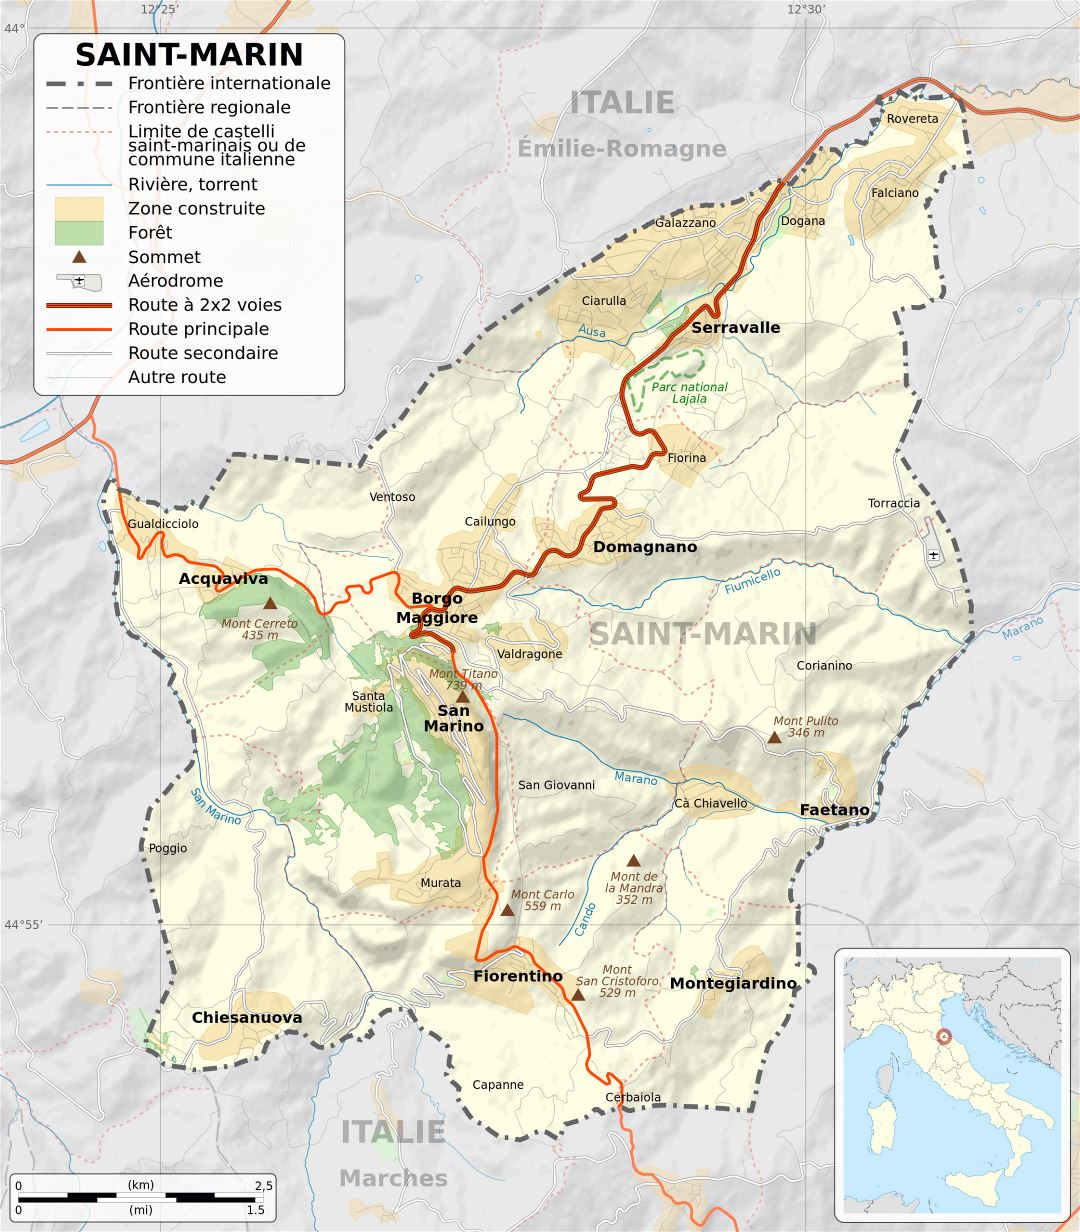 Grade detallado mapa político de San Marino con relieve, carreteras, ciudades y otras marcas en francés